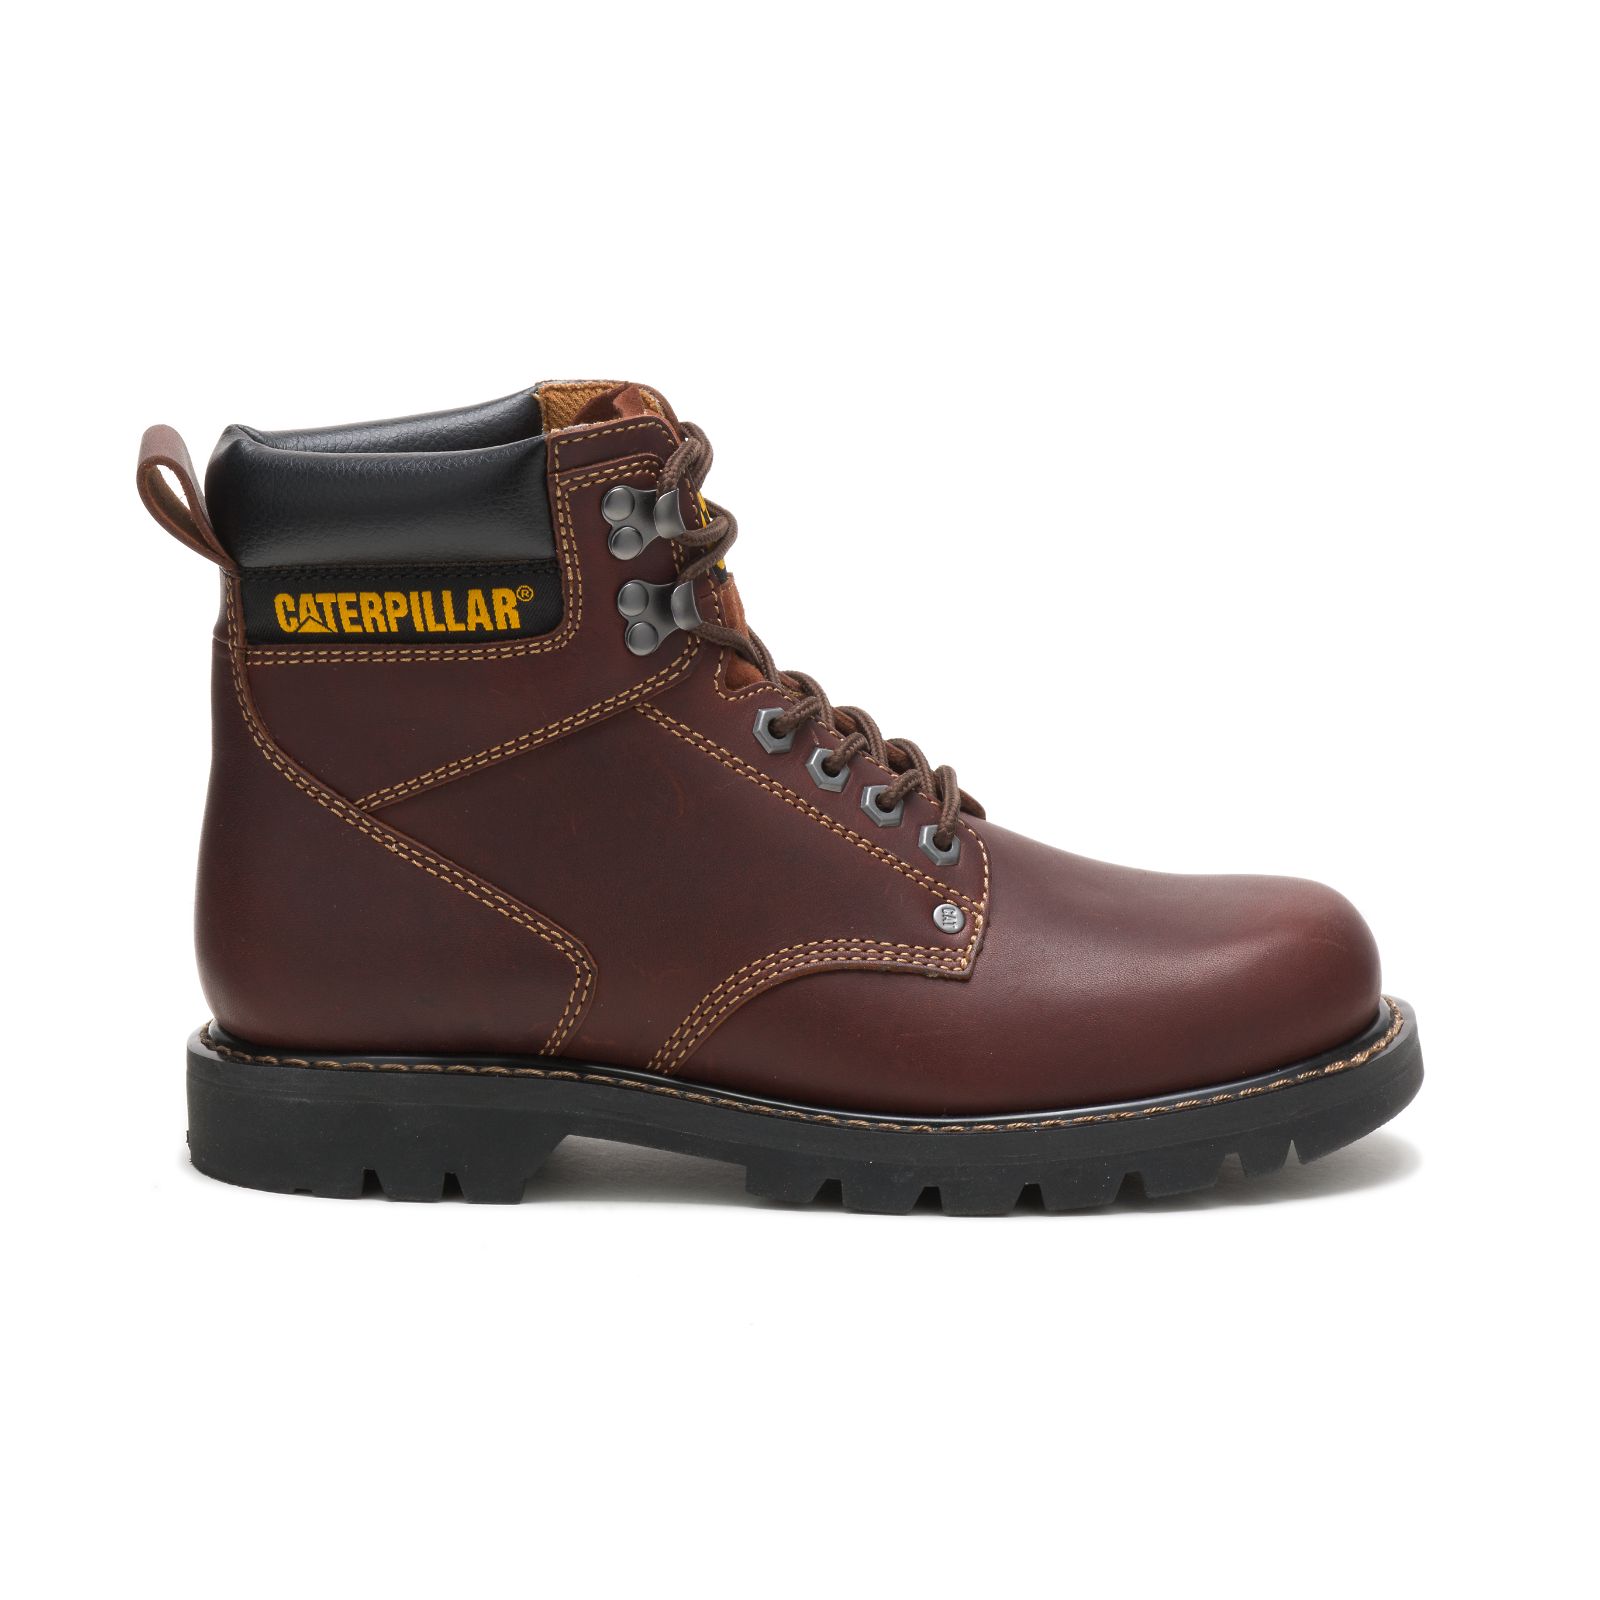 Caterpillar Second Shift - Mens Work Boots - Brown - NZ (730HFRMEI)